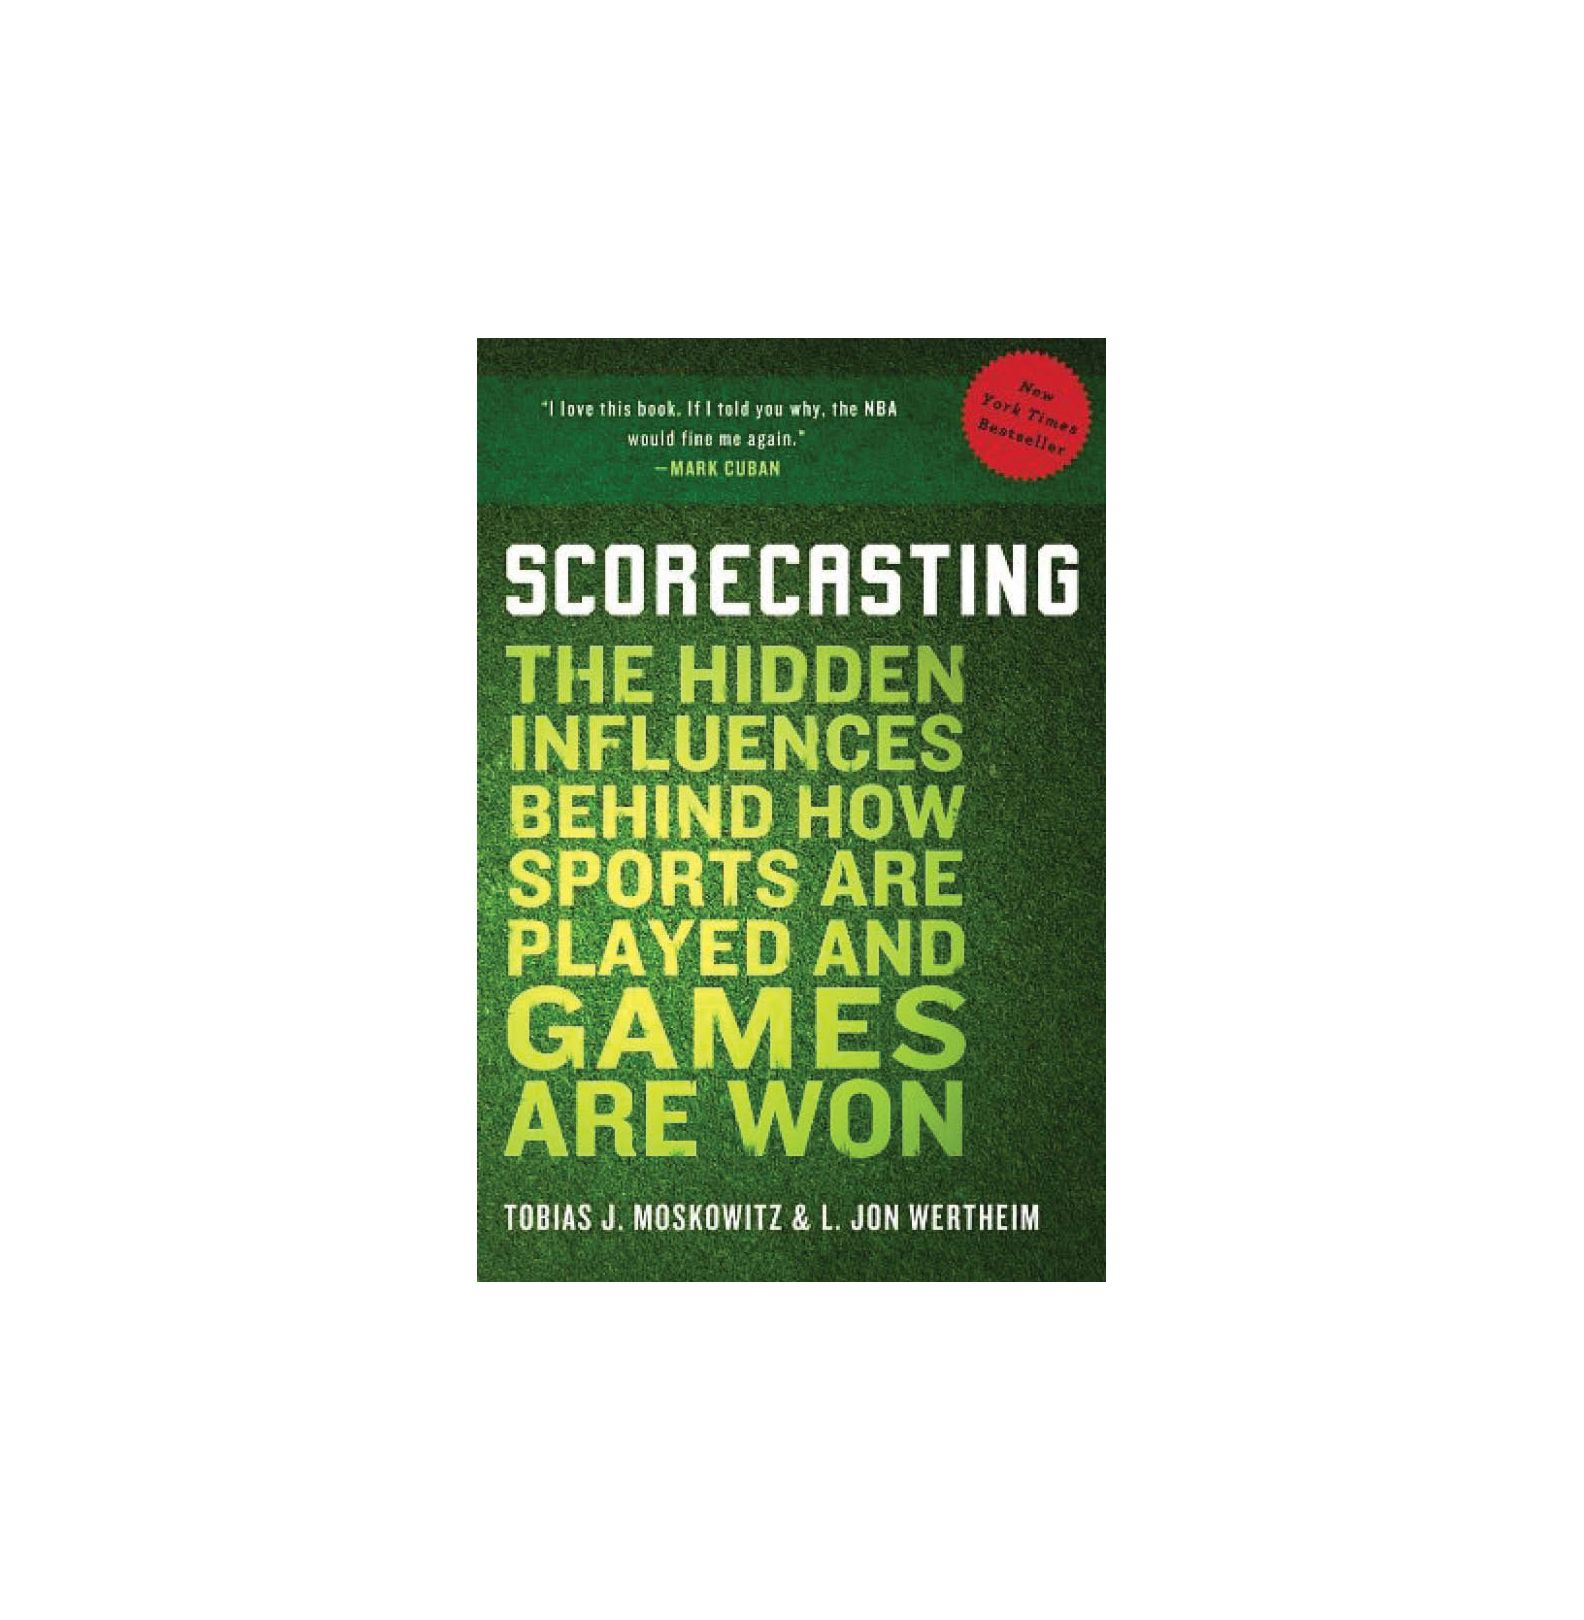 Scorecasting: Skryté vplyvy za to, ako sa športujú a ako sa vyhrávajú hry, autor: Tobias Moskowitz & L. Jon Wertheim